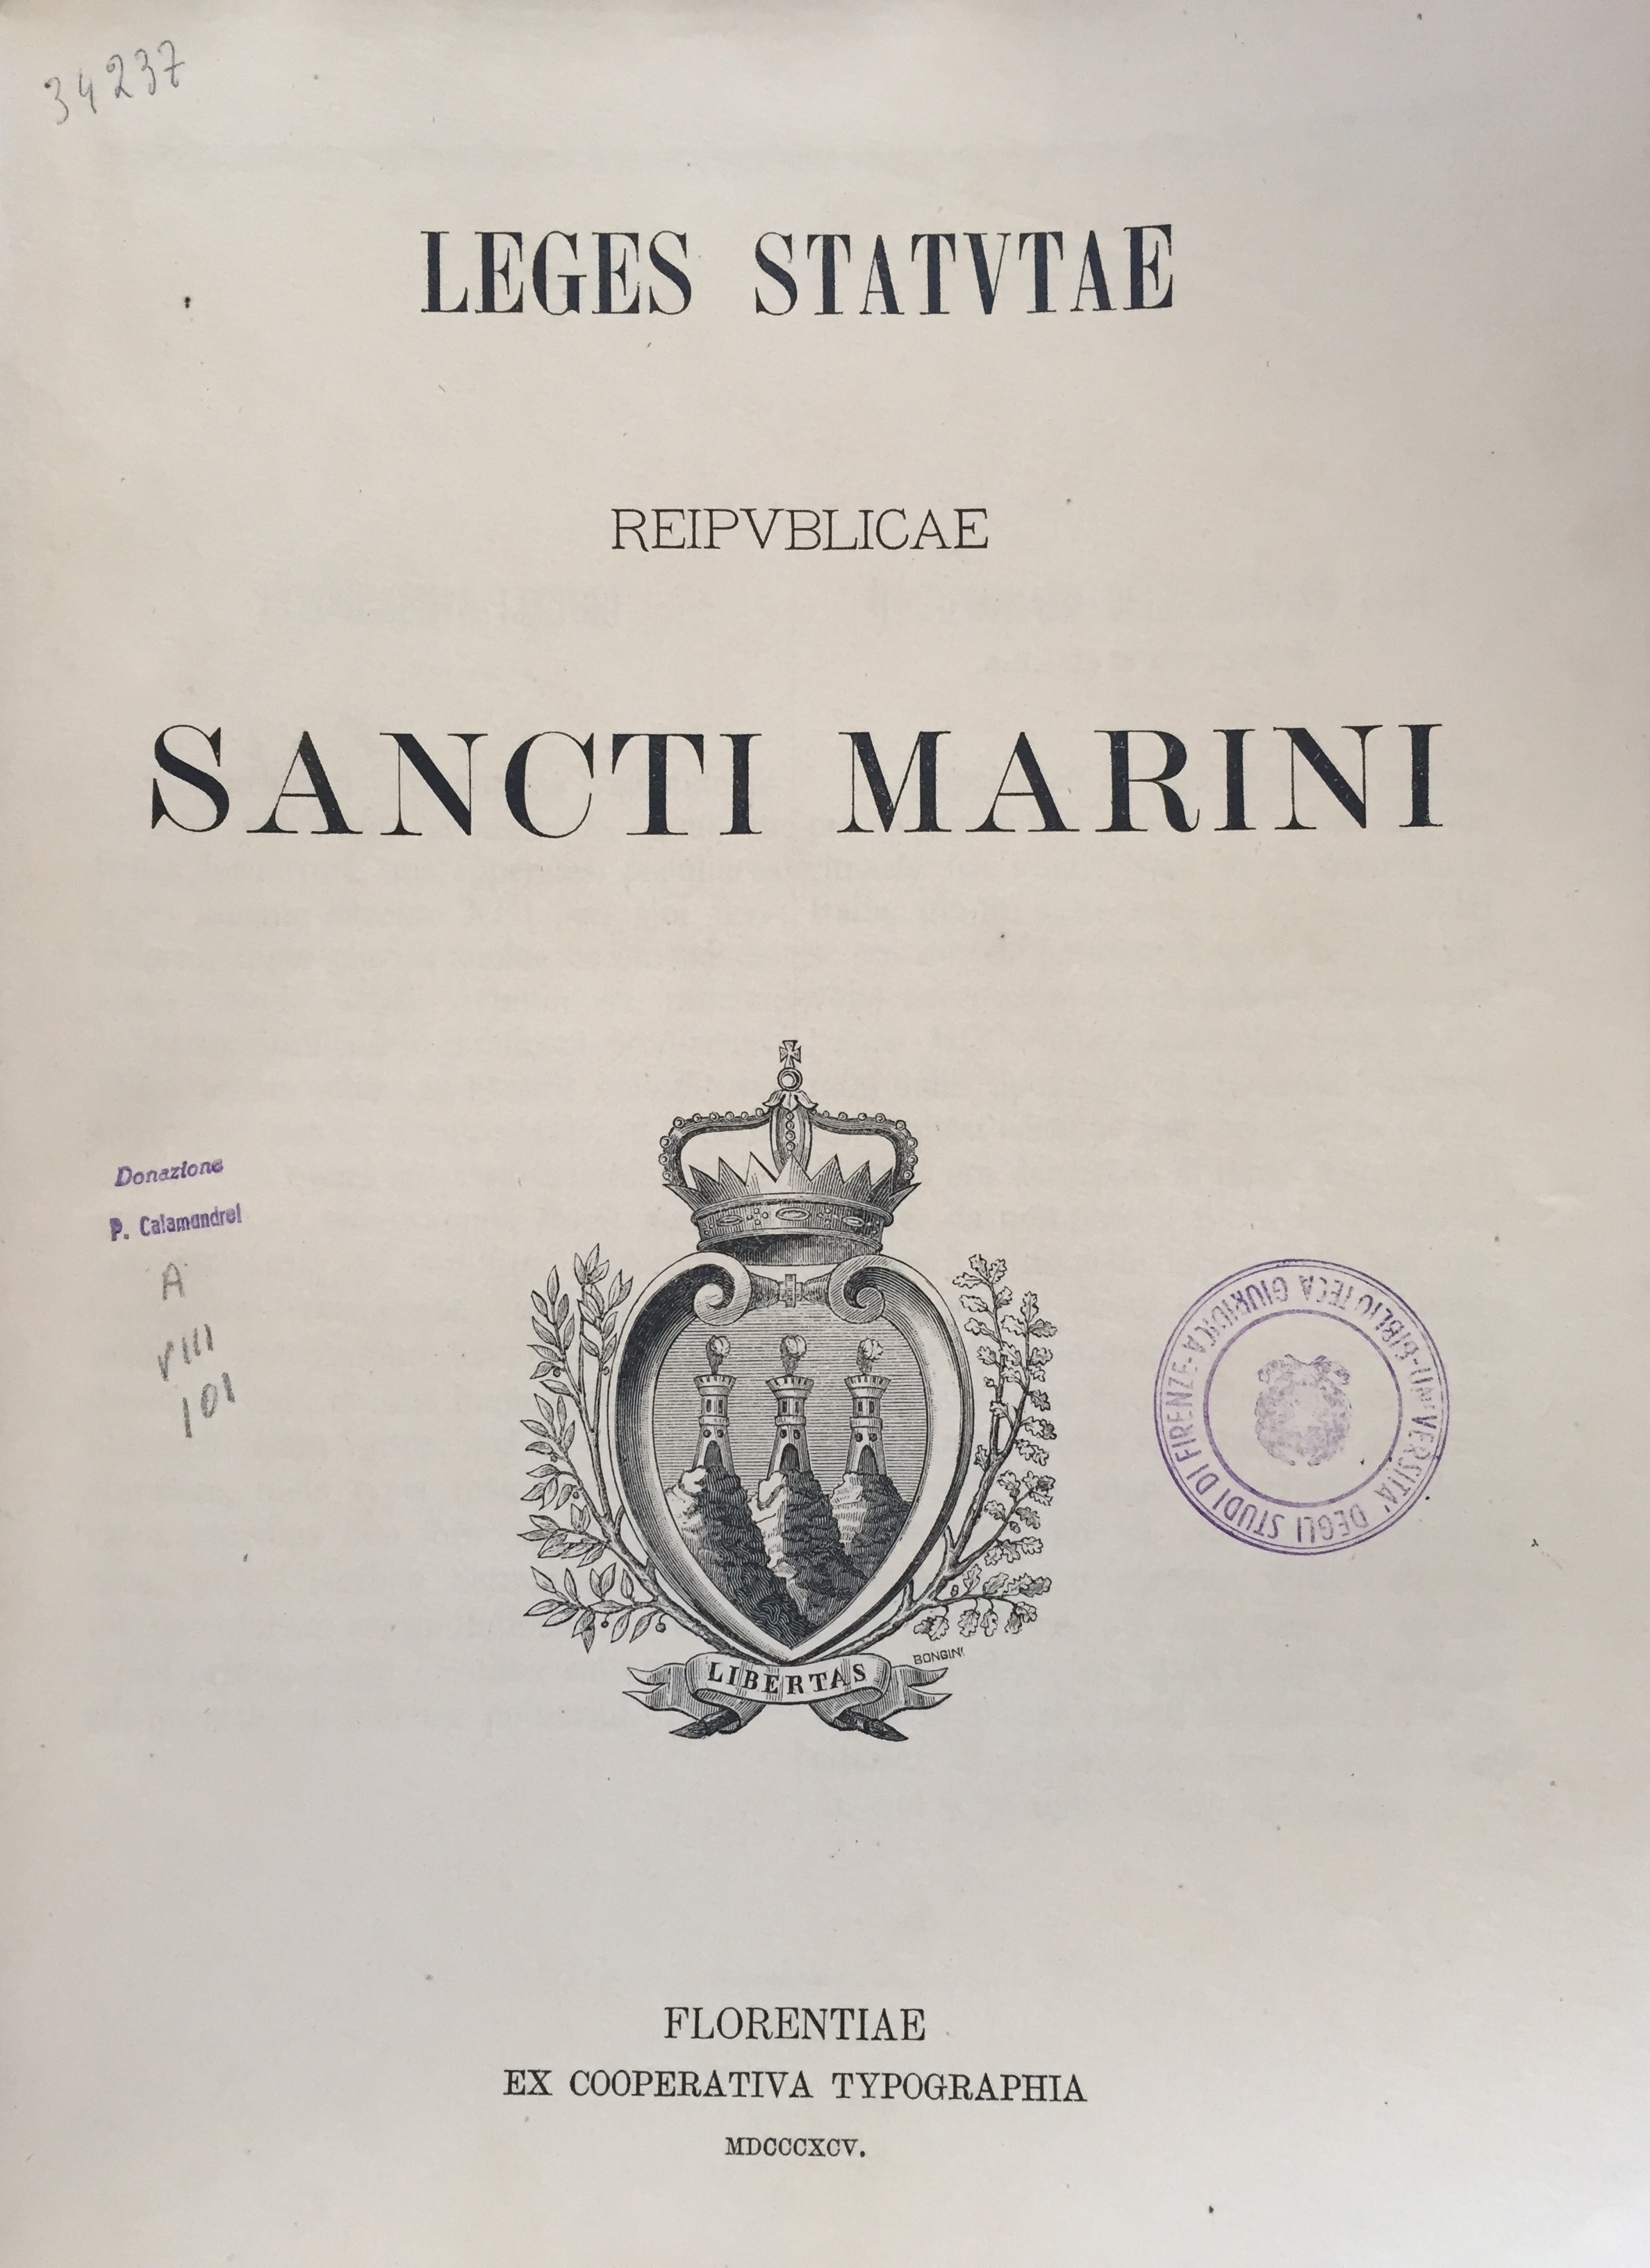 Leges statutae reipublicae Sancti Marini 